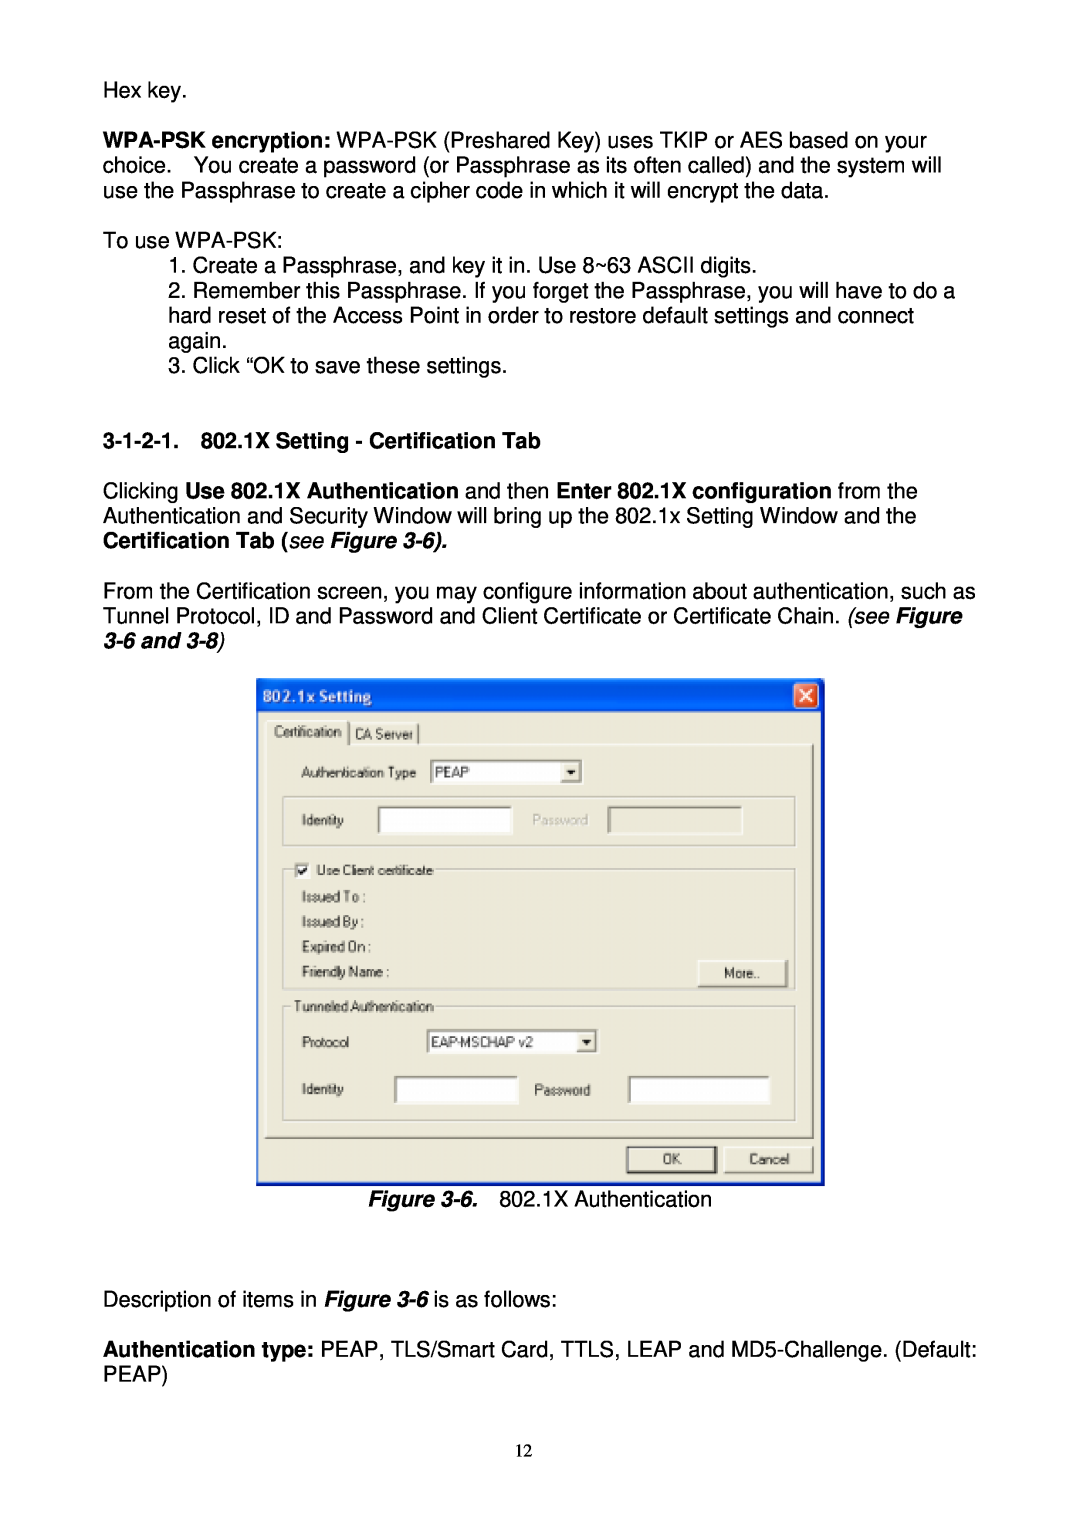 Gigabyte GN-WPKG user manual 3-1-2-1. 802.1X Setting - Certification Tab 